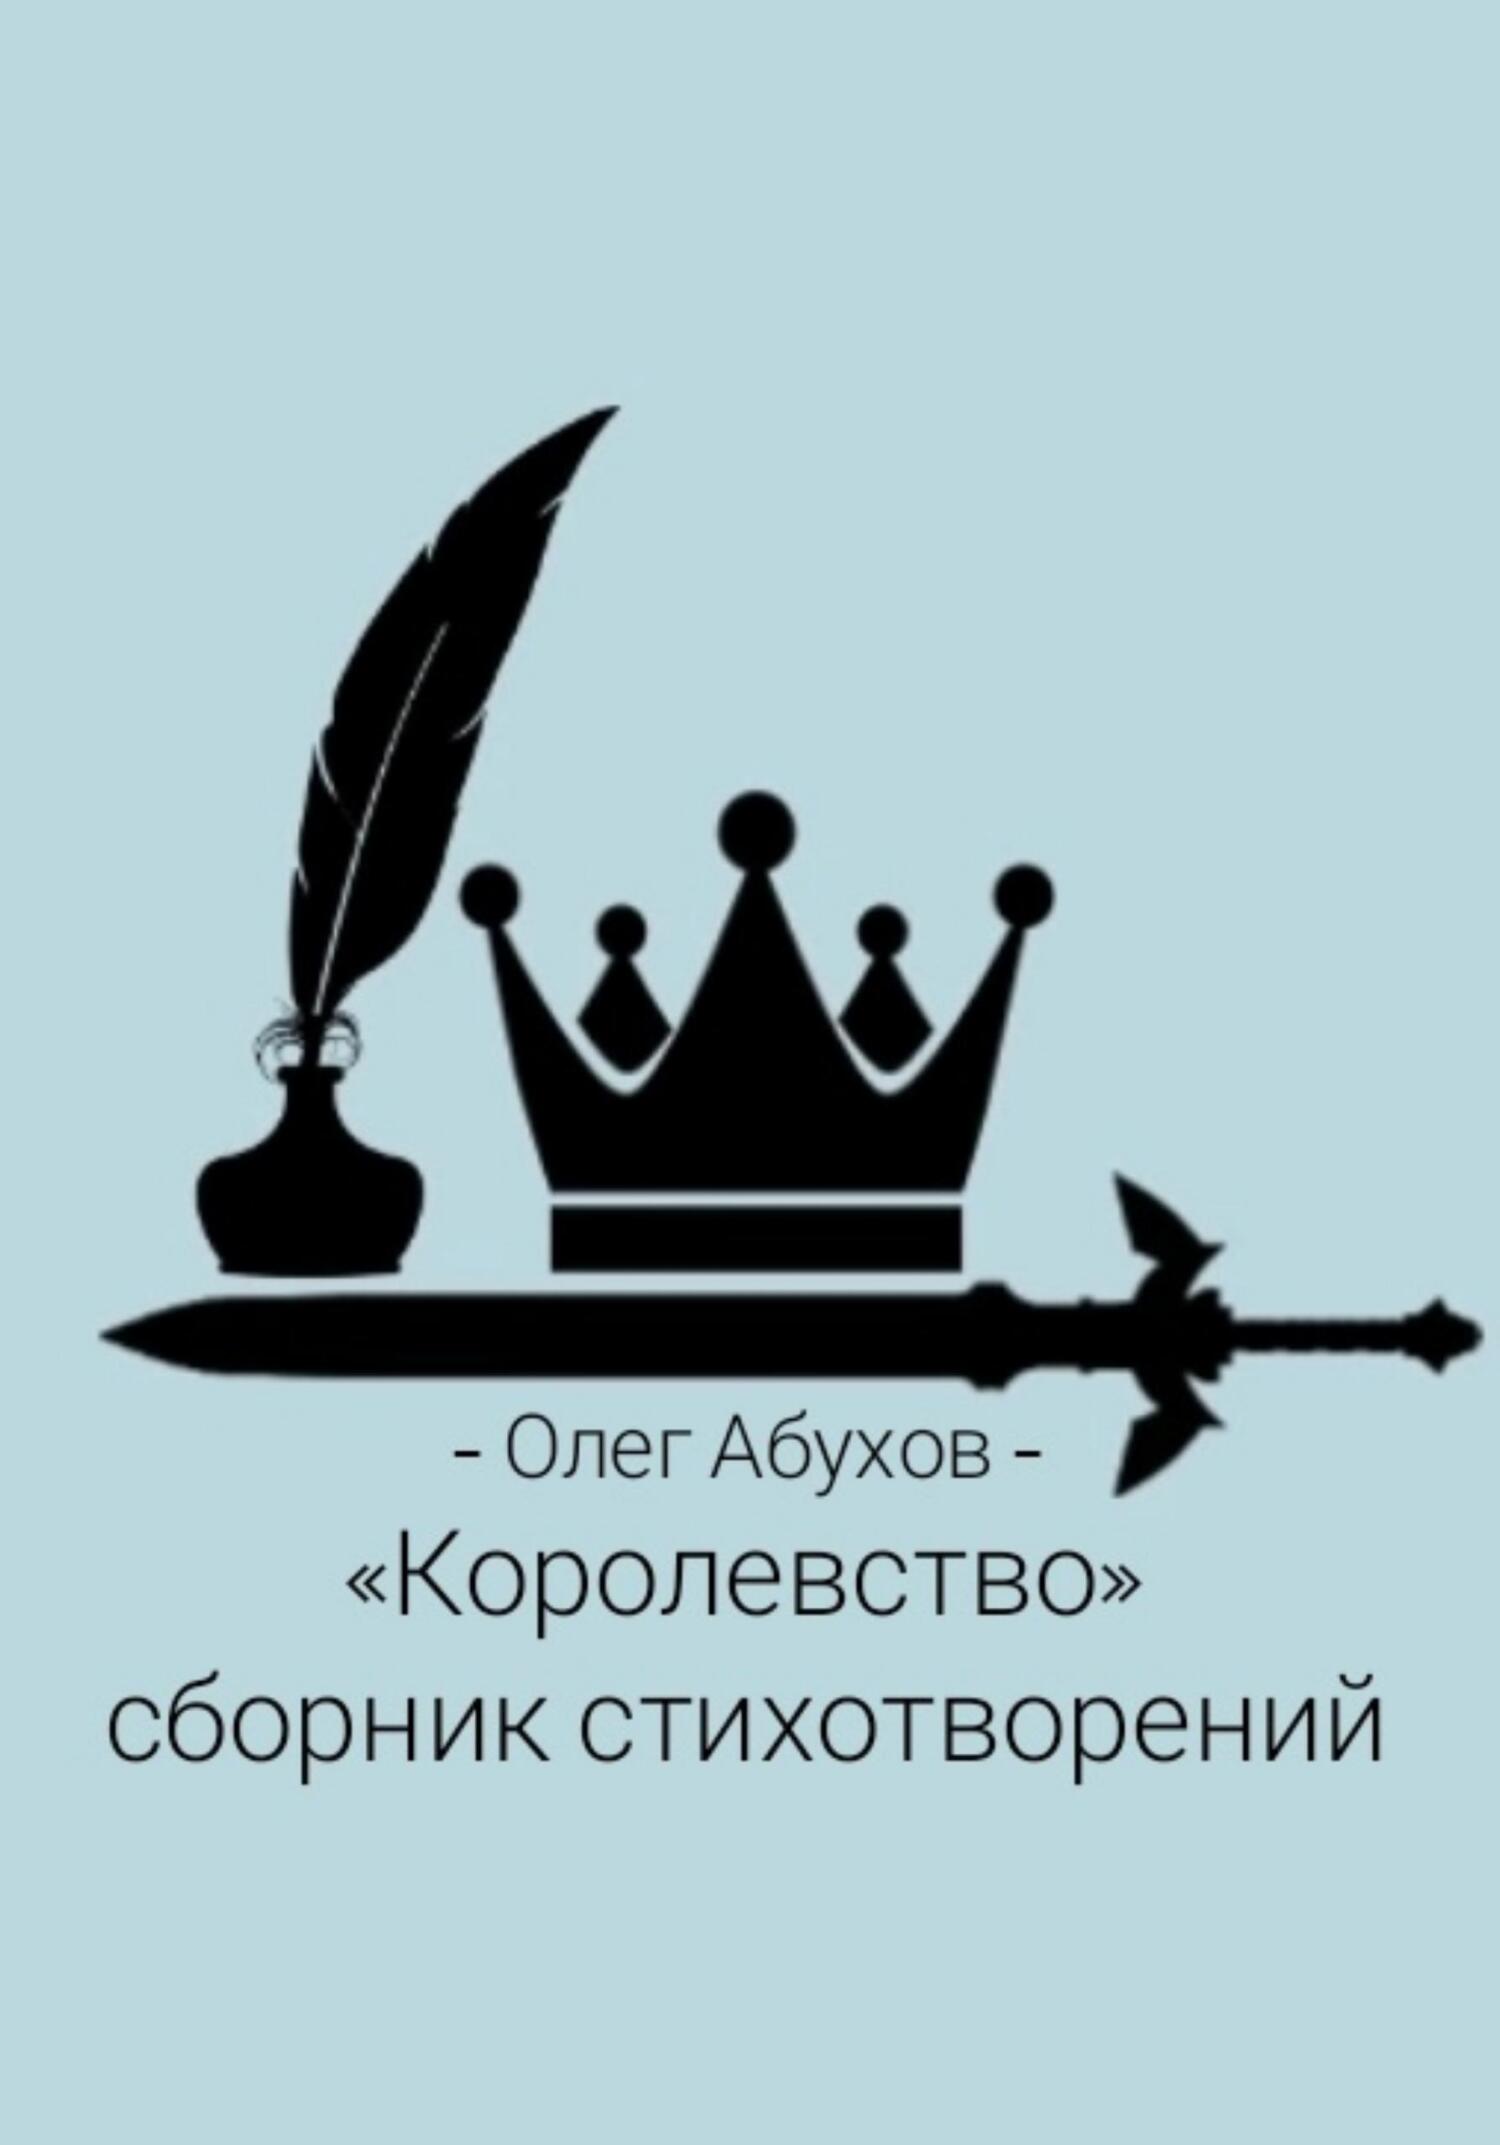 Сборник стихотворений «Королевство» - Олег Абухов